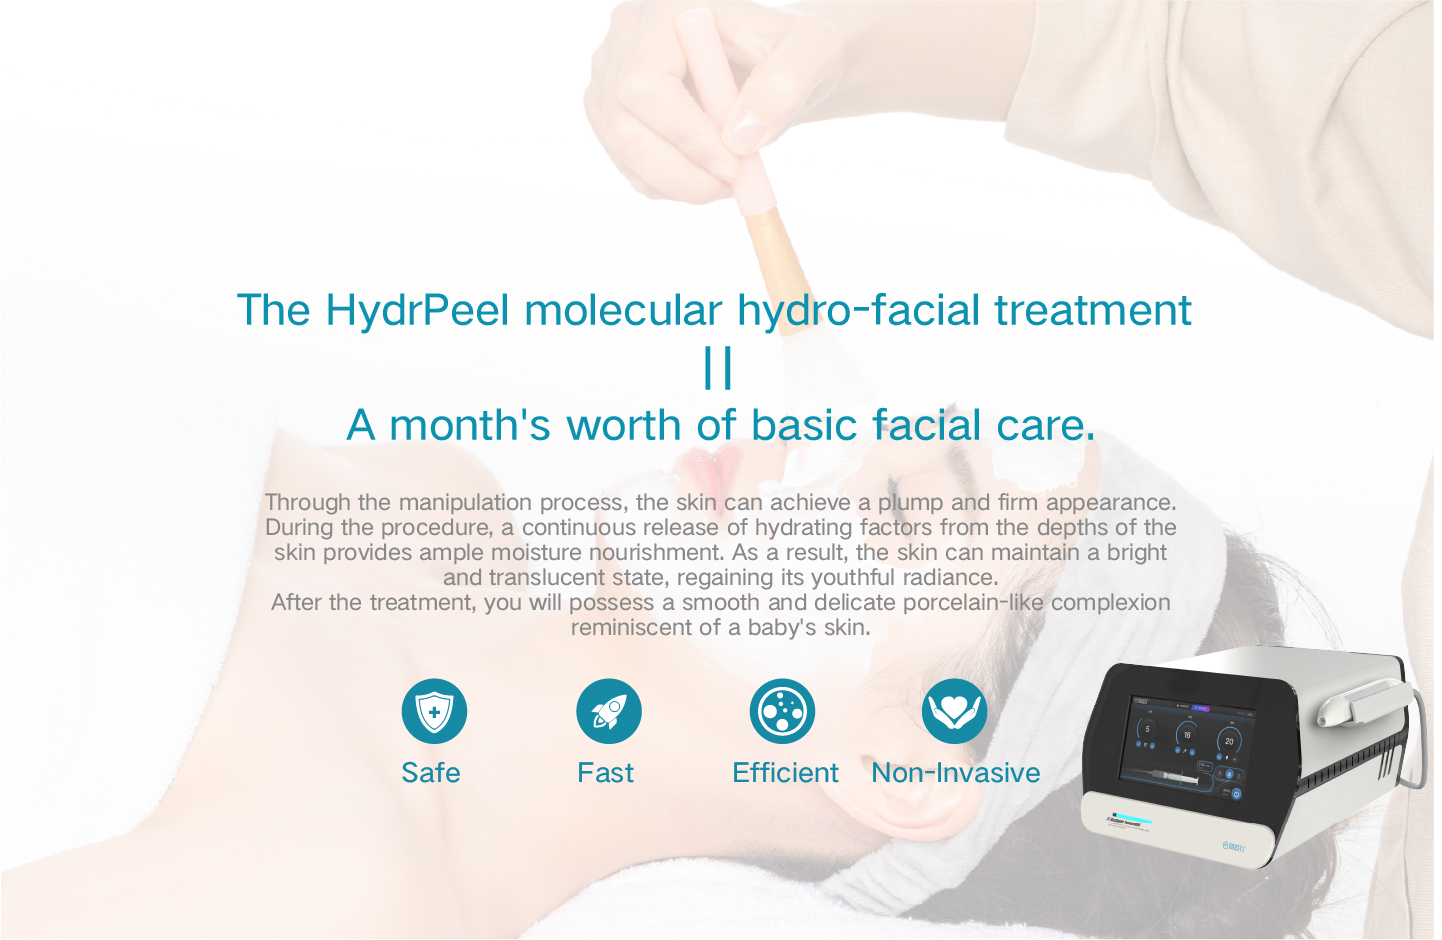 HydrPeel hydro-facialis hypothetica curatio aequivalet menstrui valoris fundamentalis curae facialis